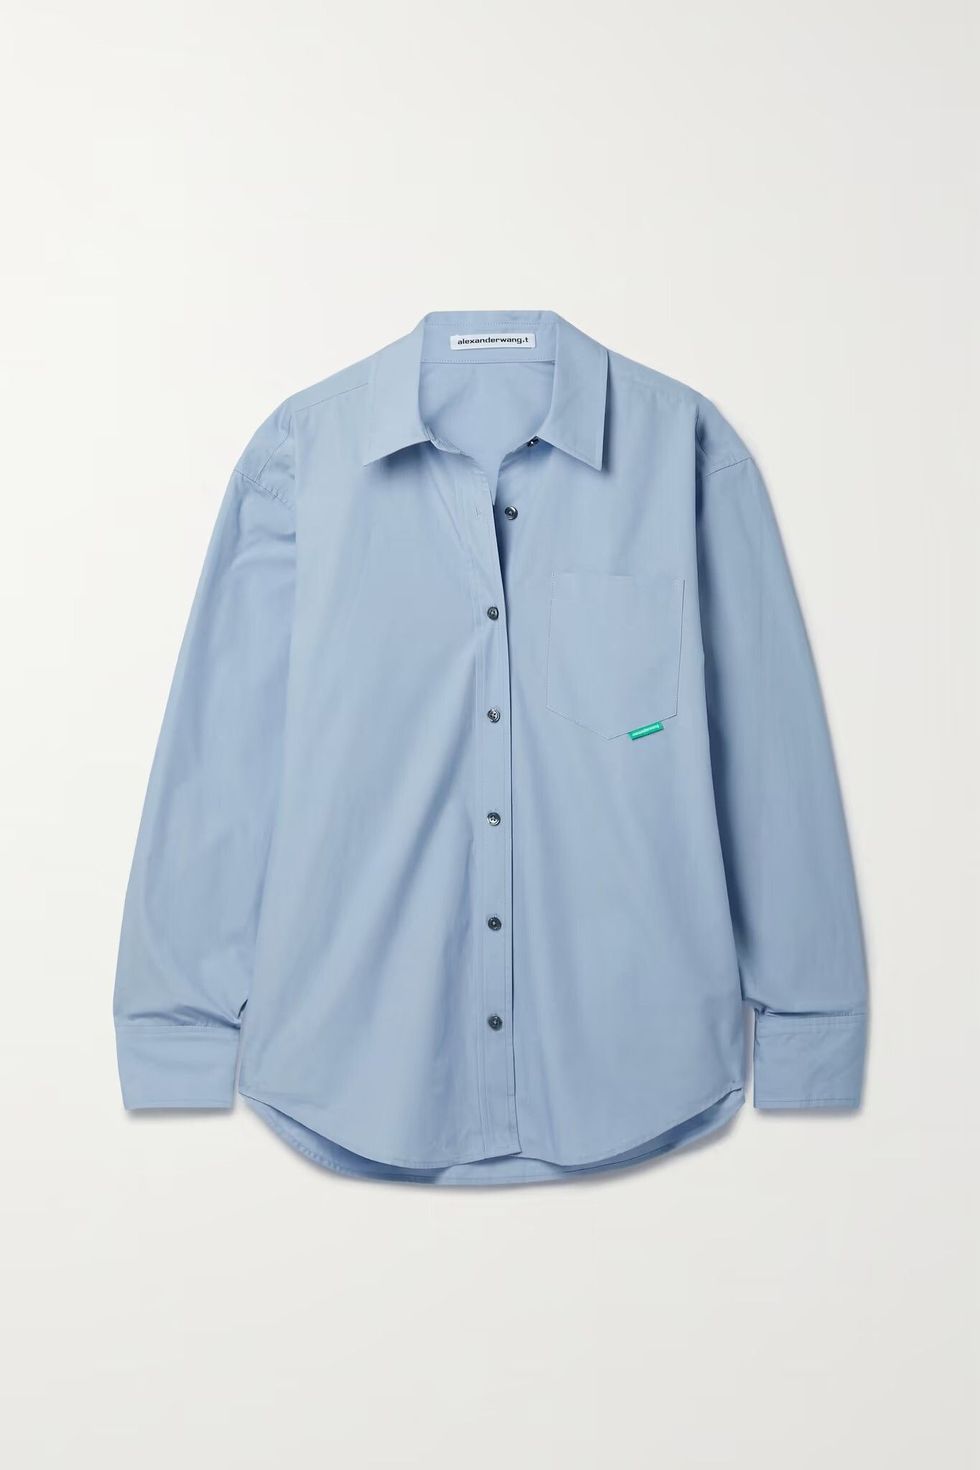 夏天寬鬆襯衫推薦：Alexanderwang.t藍色棉質襯衫